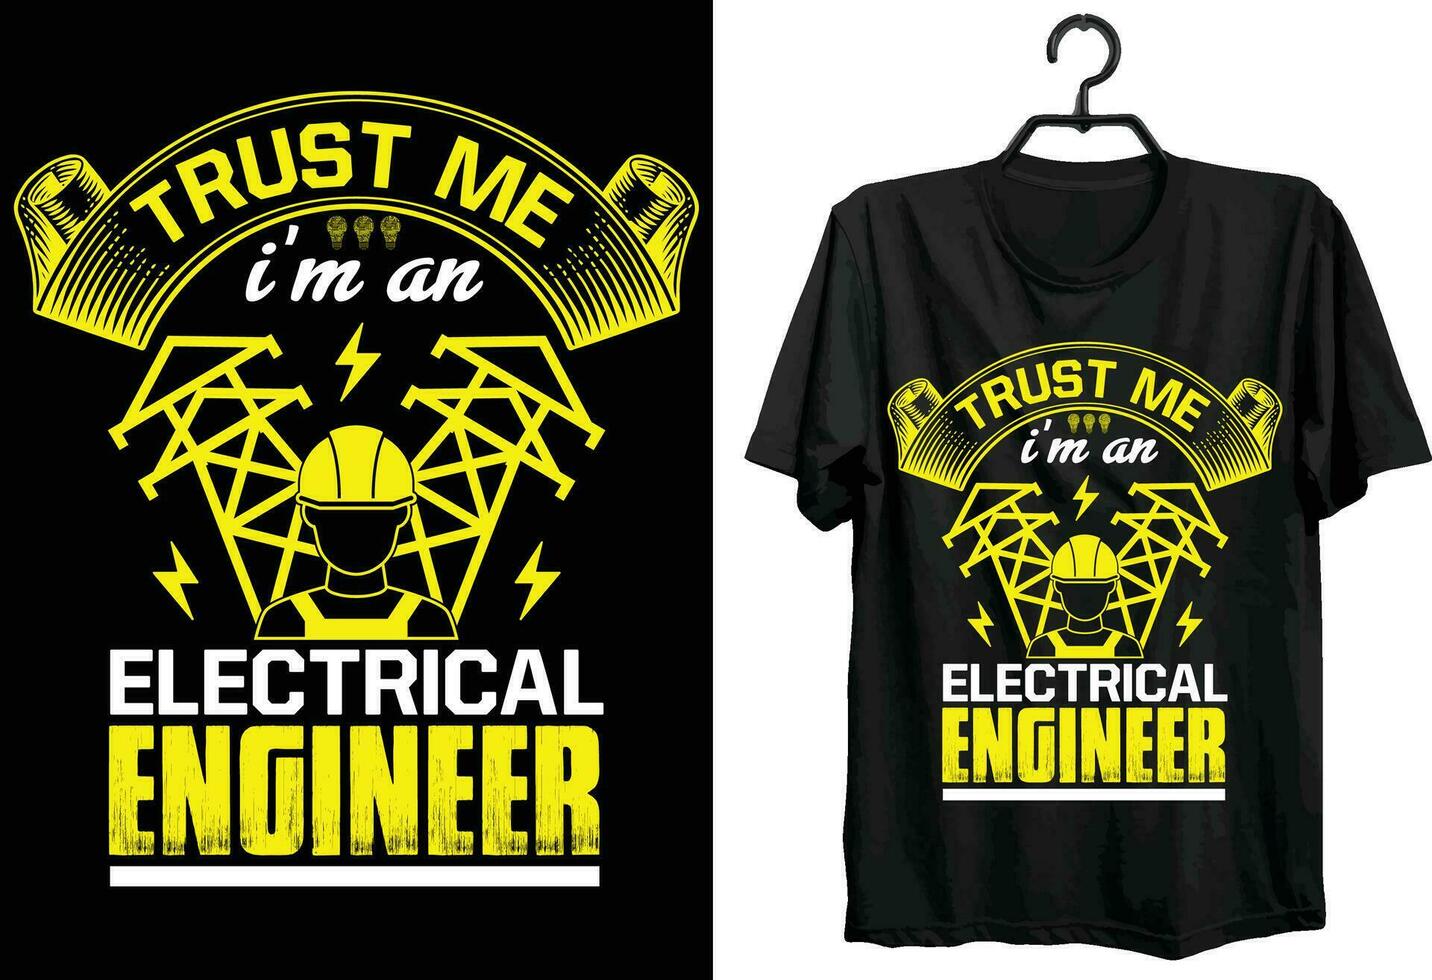 fiducia me io sono un elettrico ingegnere. elettrico ingegnere t camicia design. divertente regalo articolo elettrico ingegnere t camicia design per elettricista. vettore